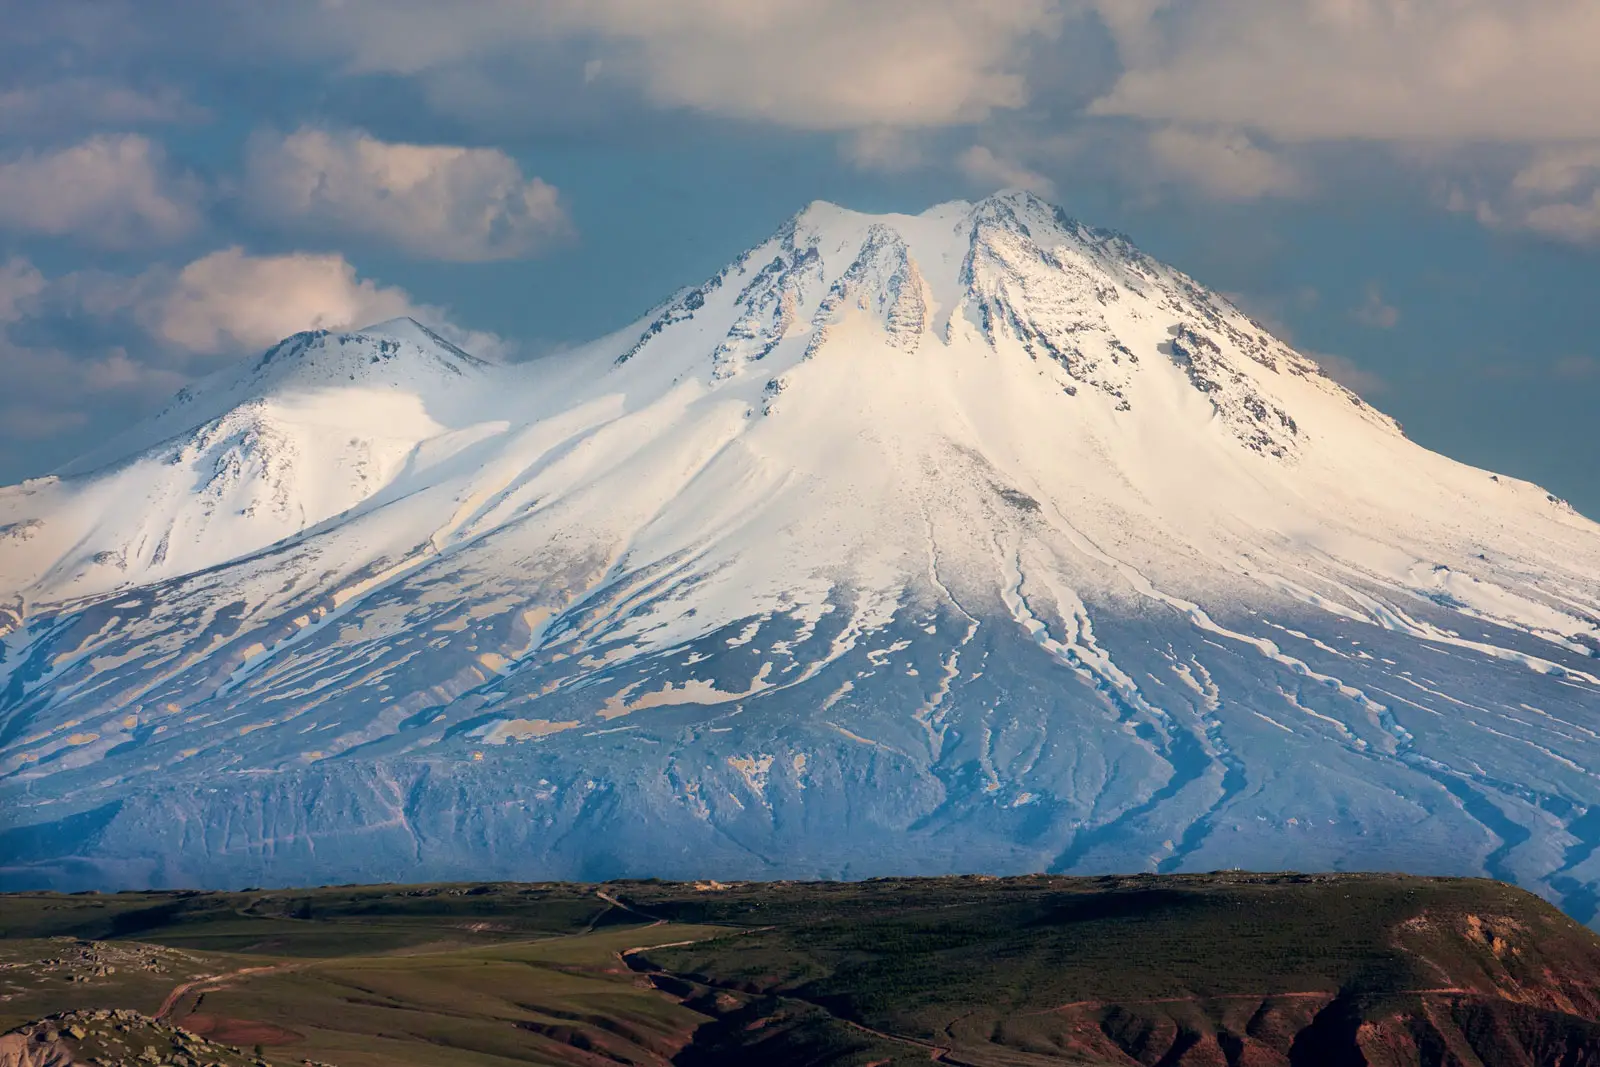 Mt. Ararat in Turkey